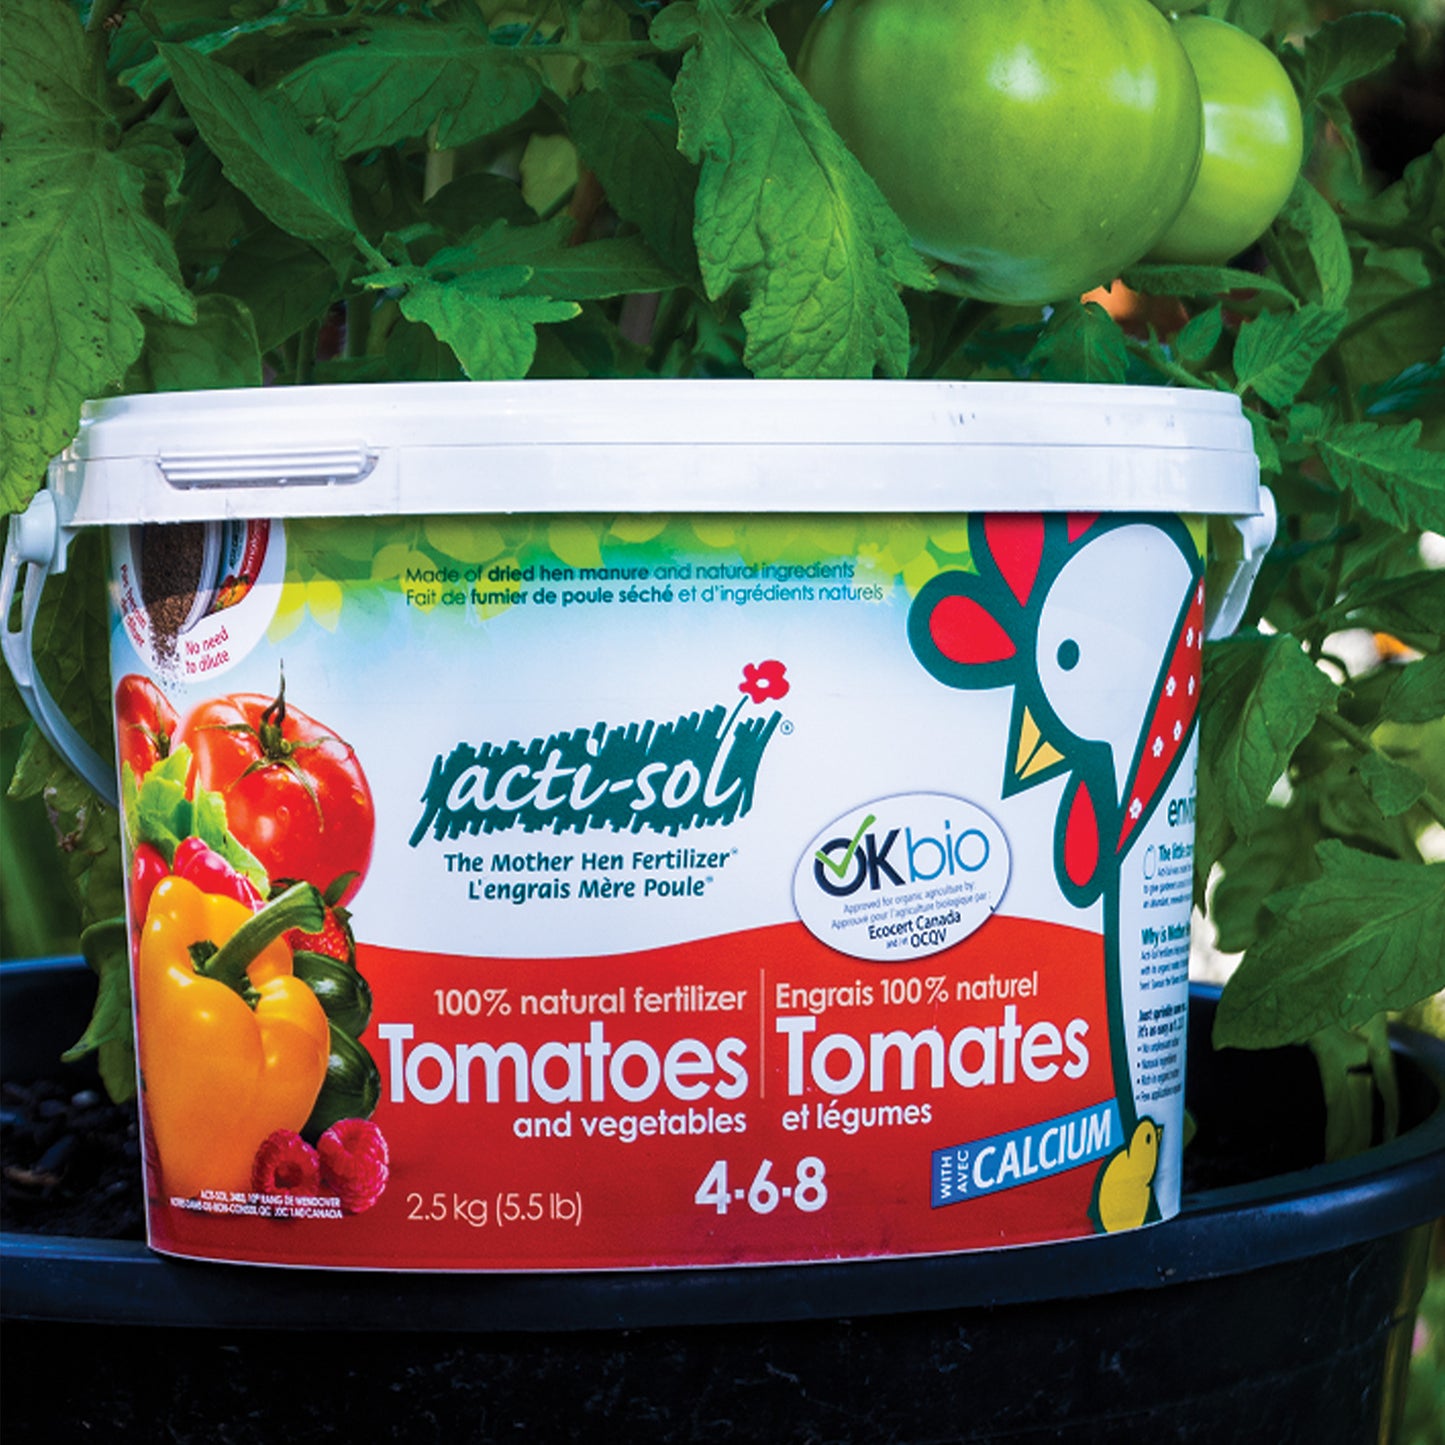 Engrais Tomates et Légumes 4-6-8 100% naturel